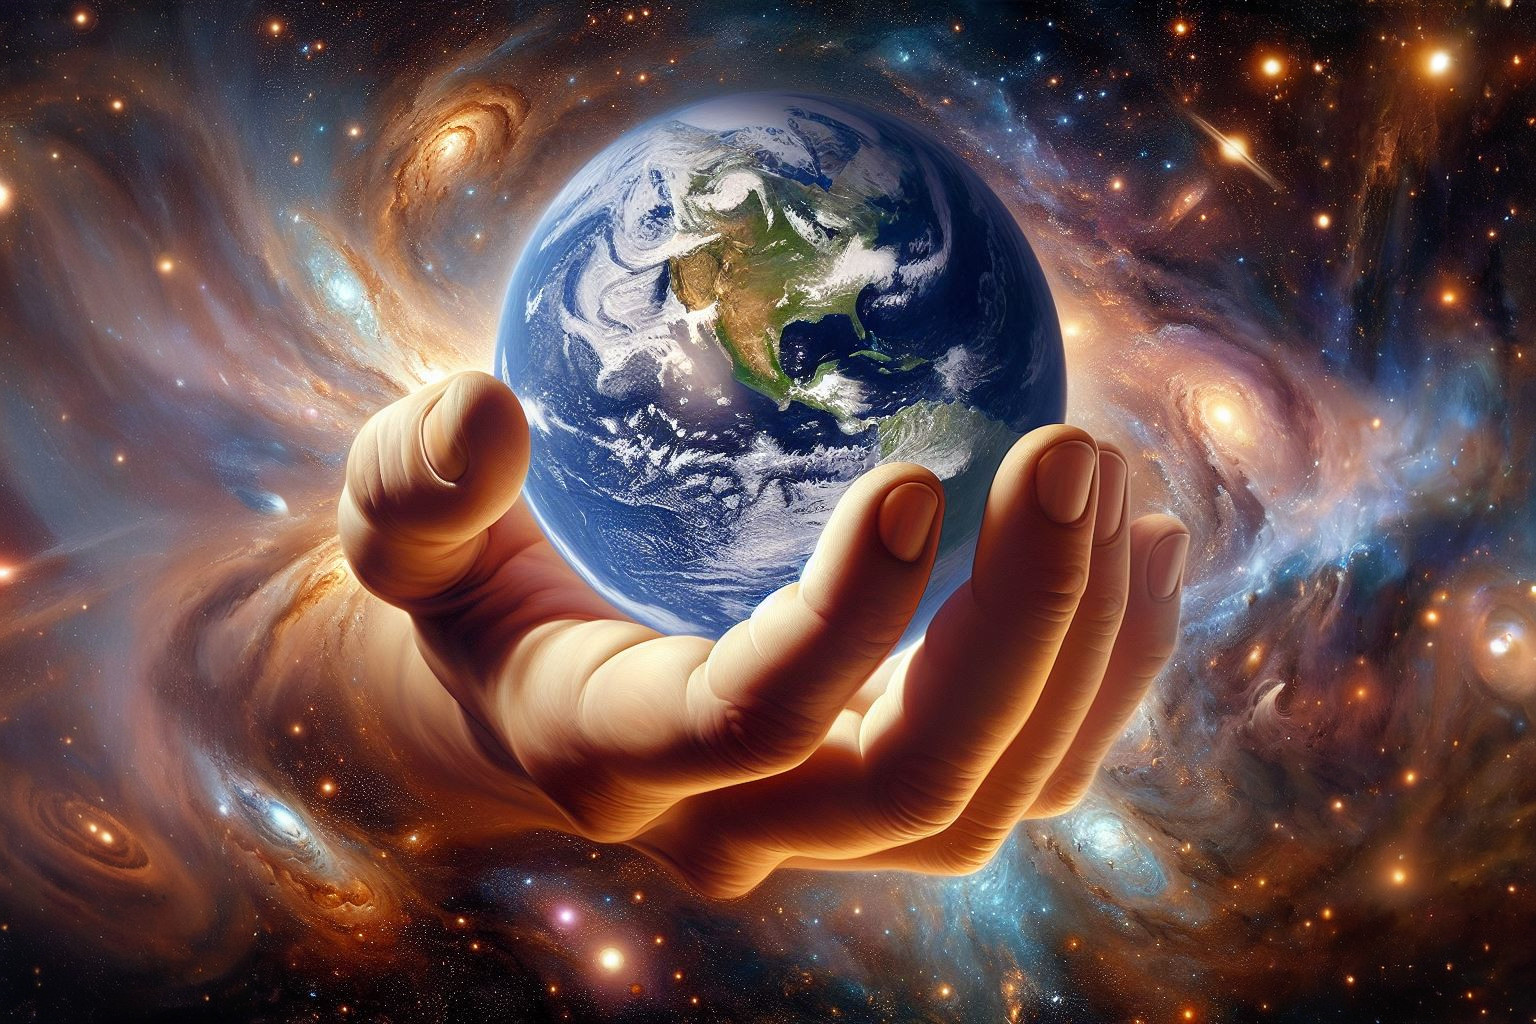 Bewahrung der Schöpfung - Die Welt in Gottes Händen